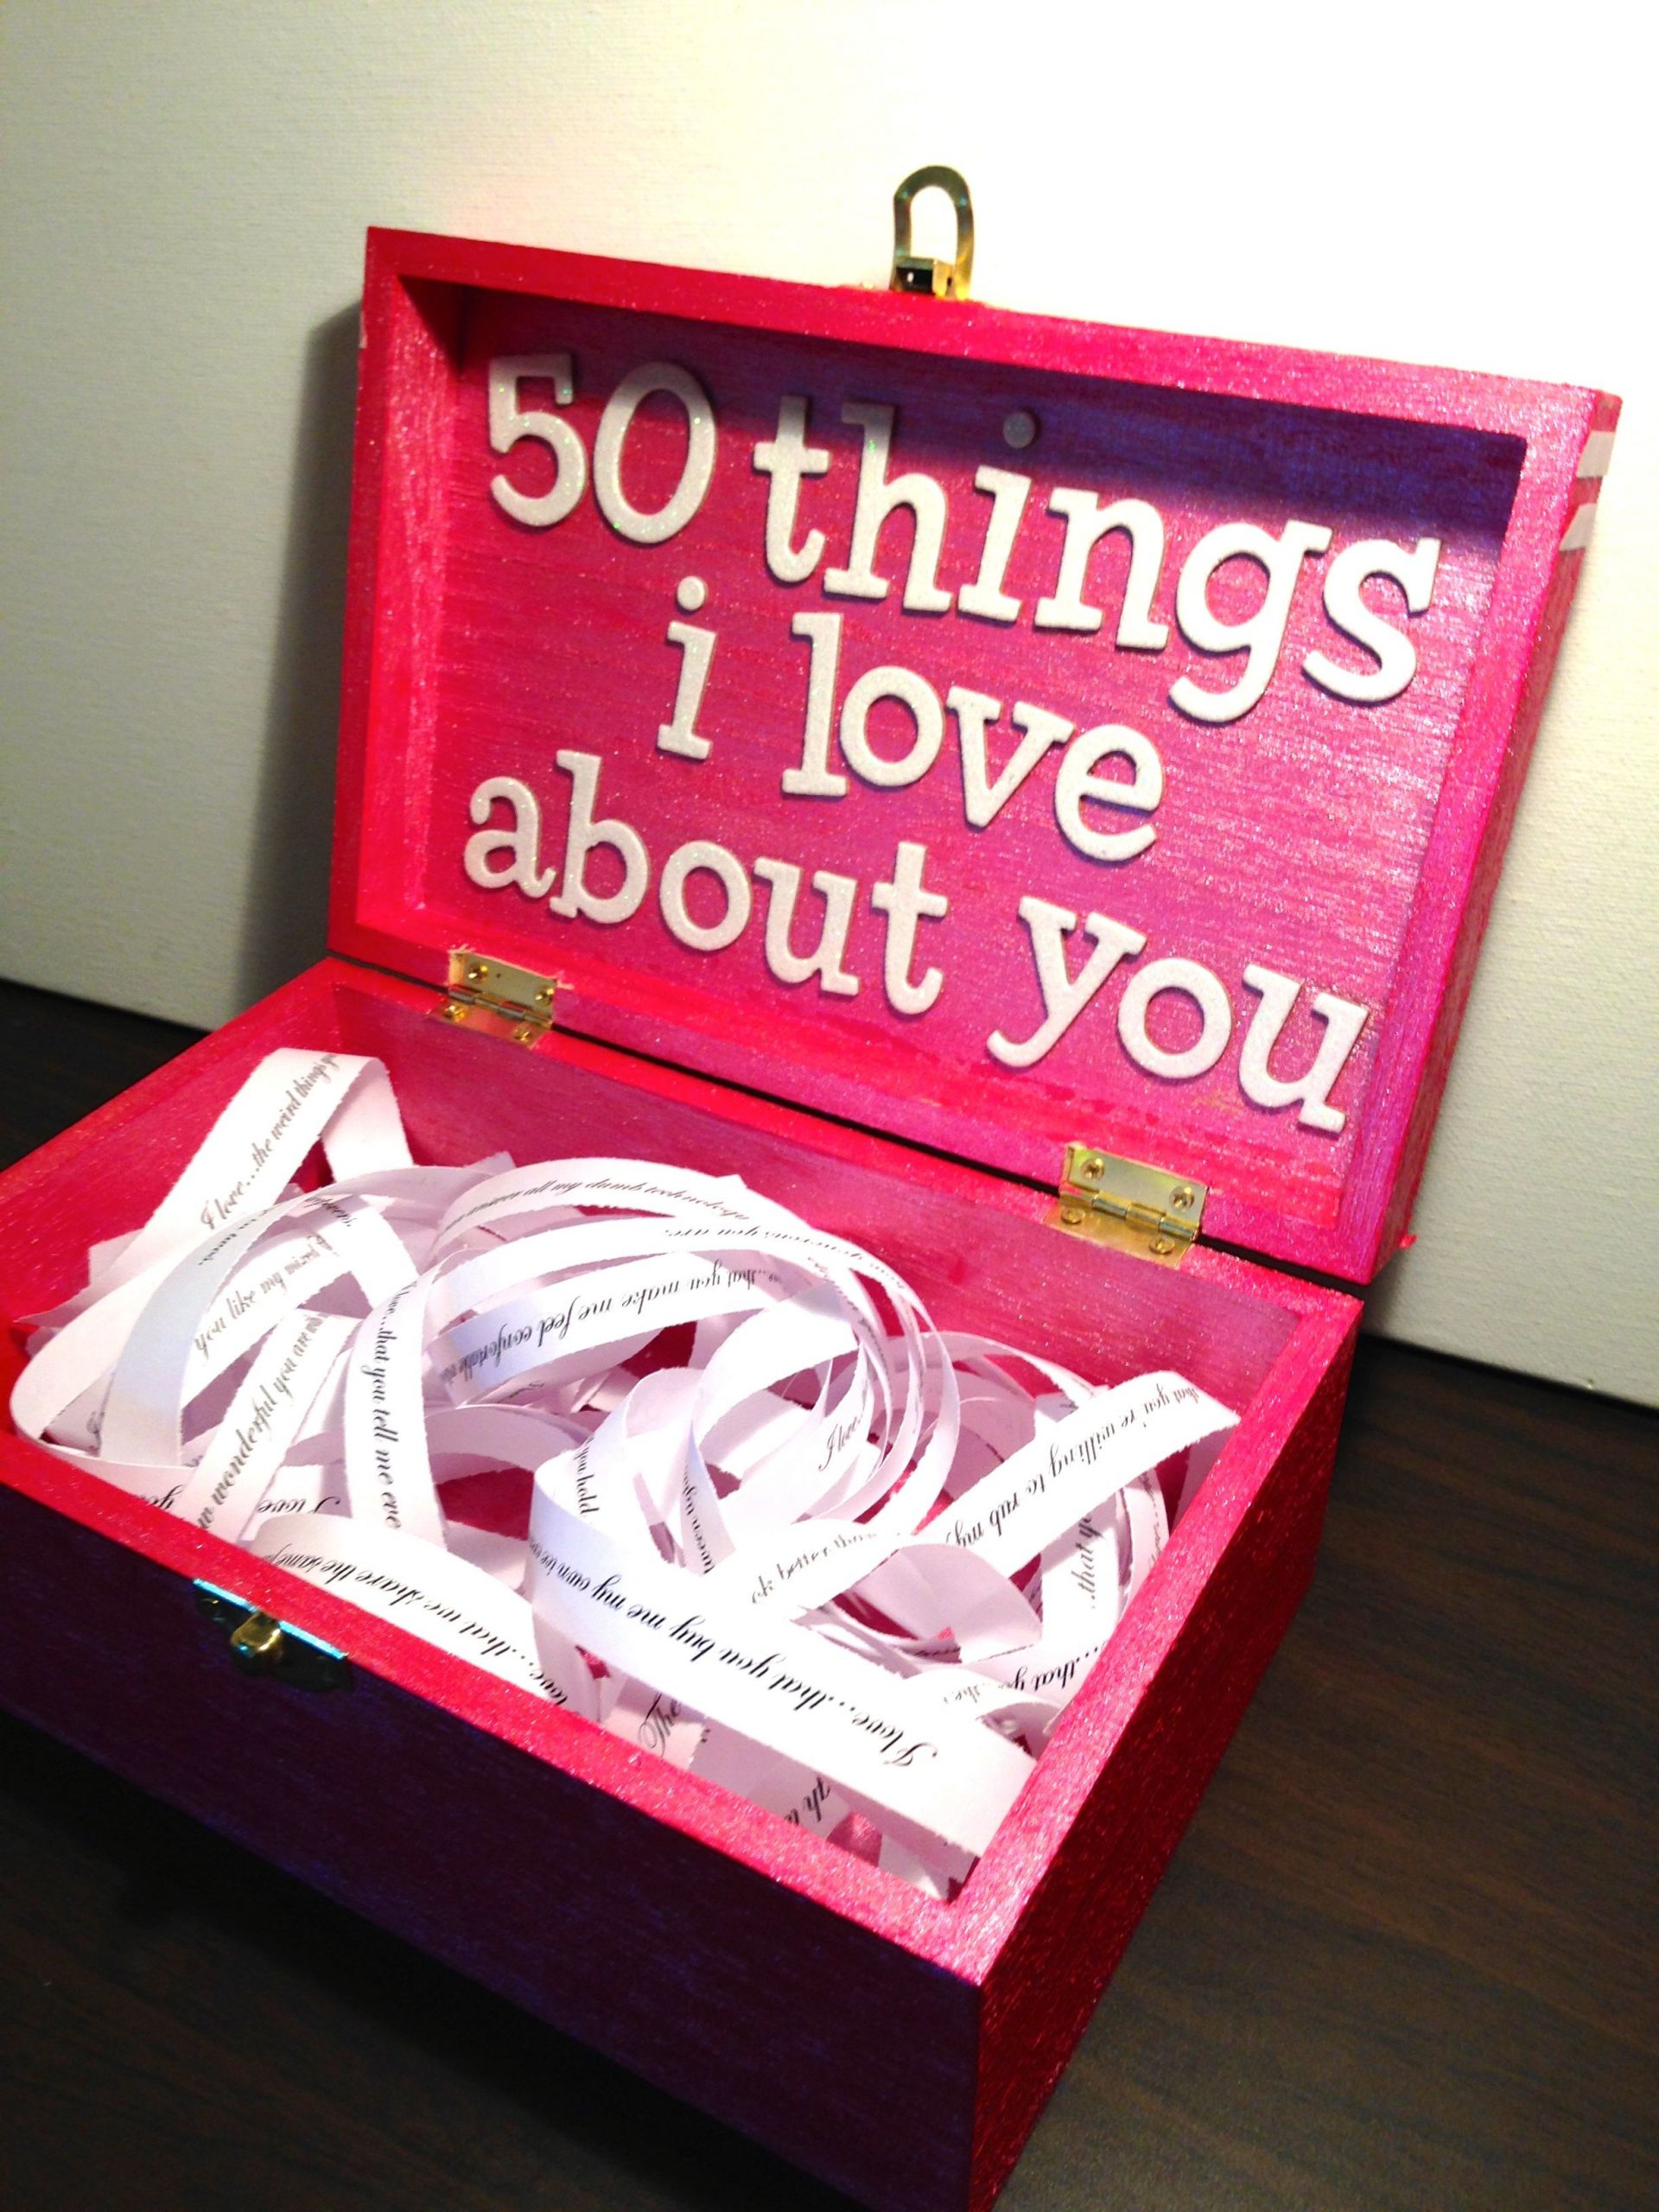 Best Gift Ideas For Girlfriend
 Boyfriend Girlfriend t ideas for birthday valentine